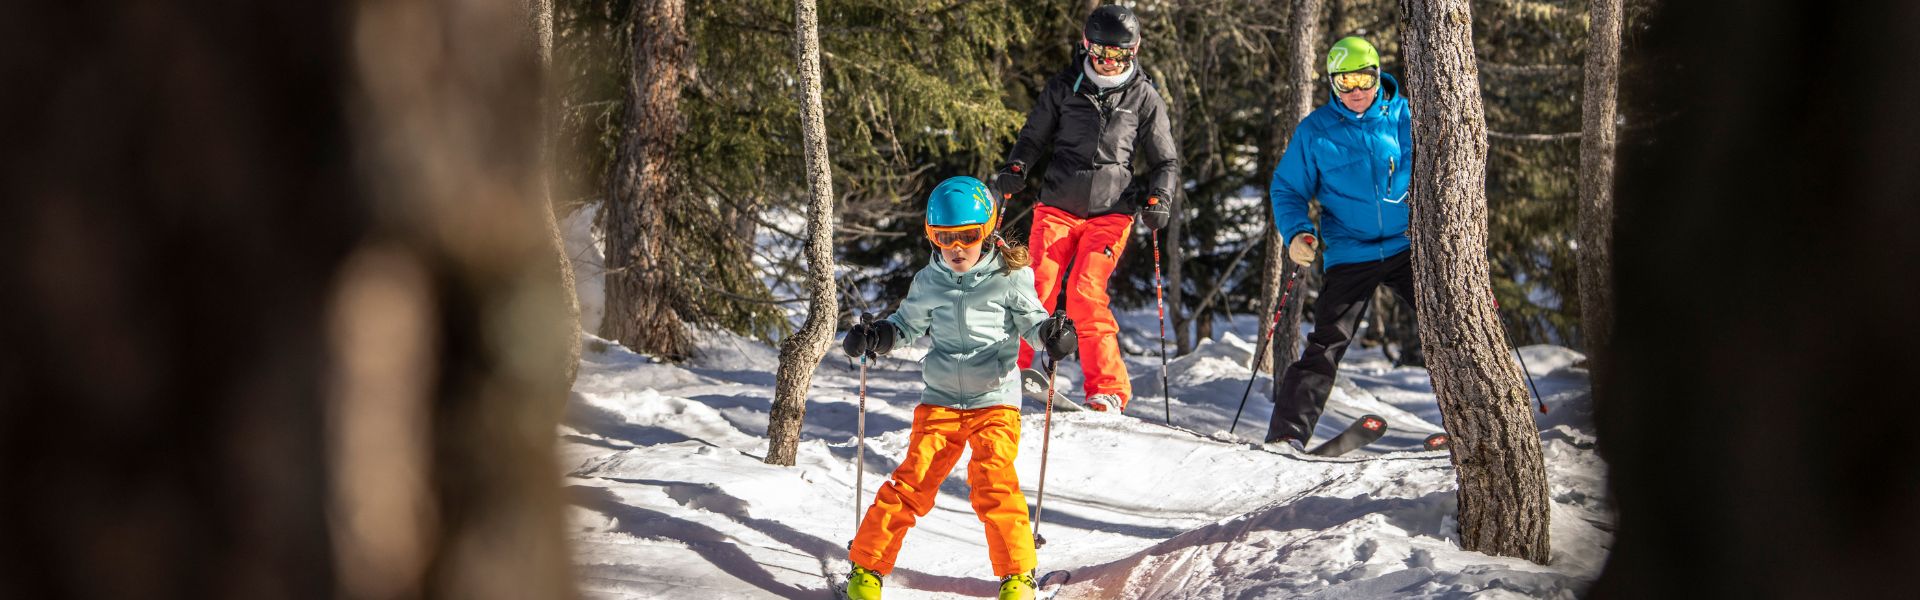 famille ski en forêt